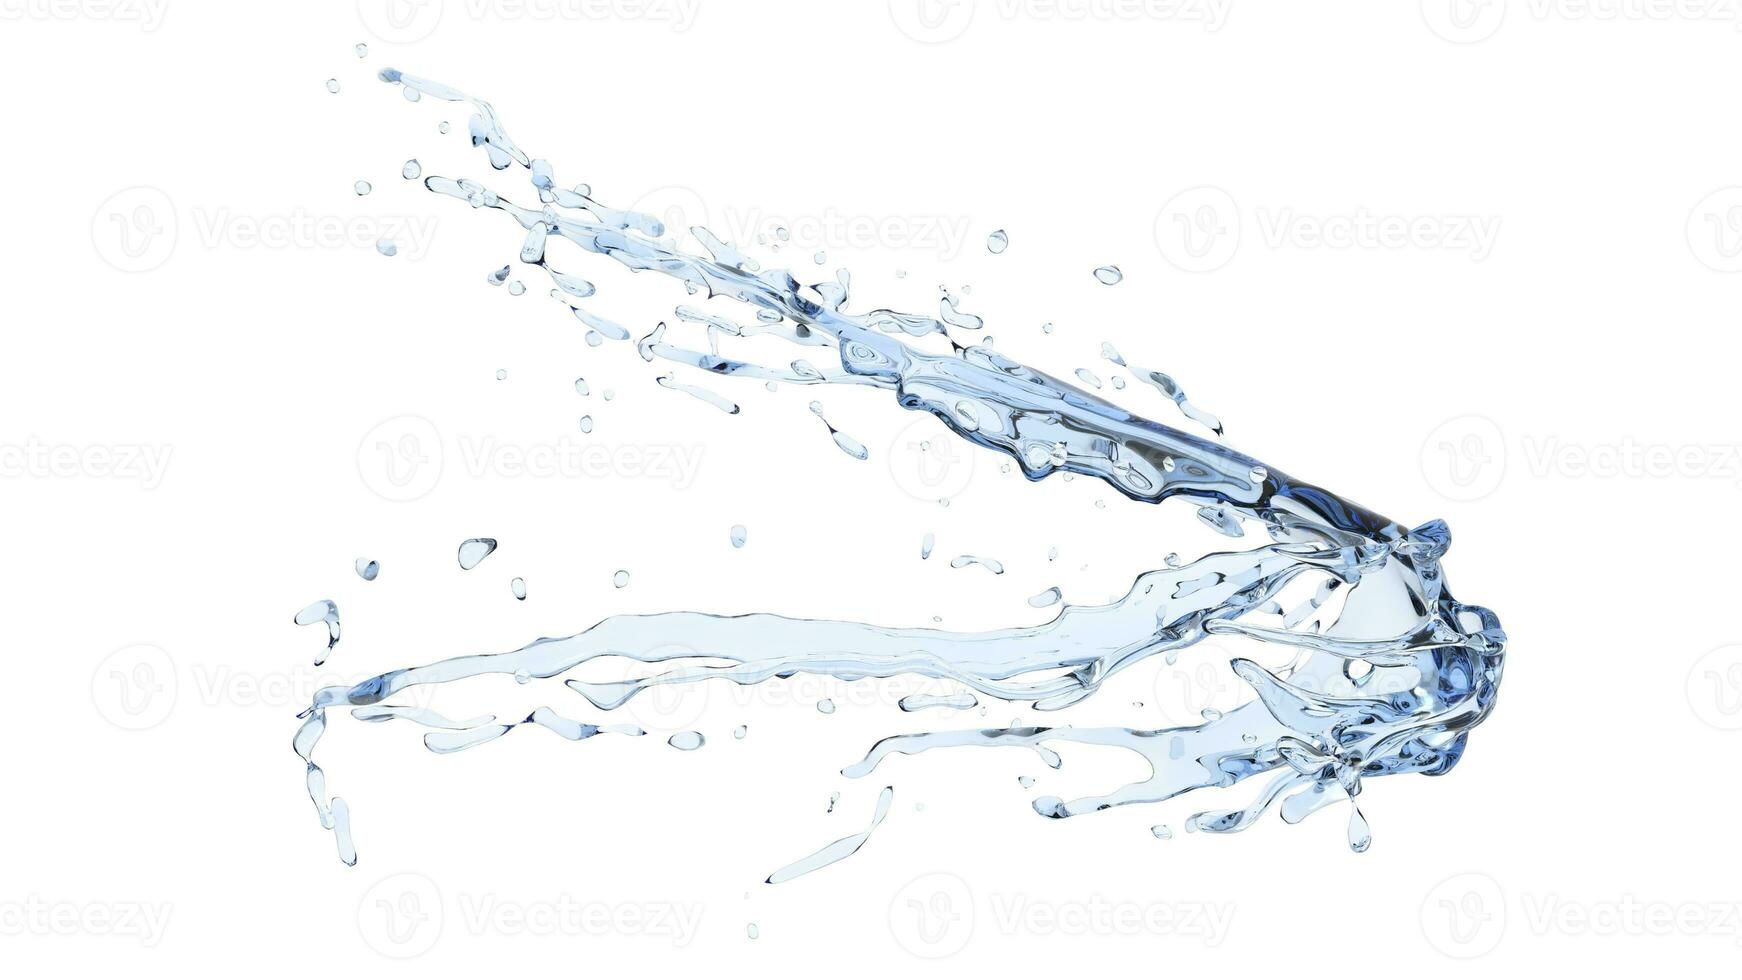 Pure water high velocity impact splash photo